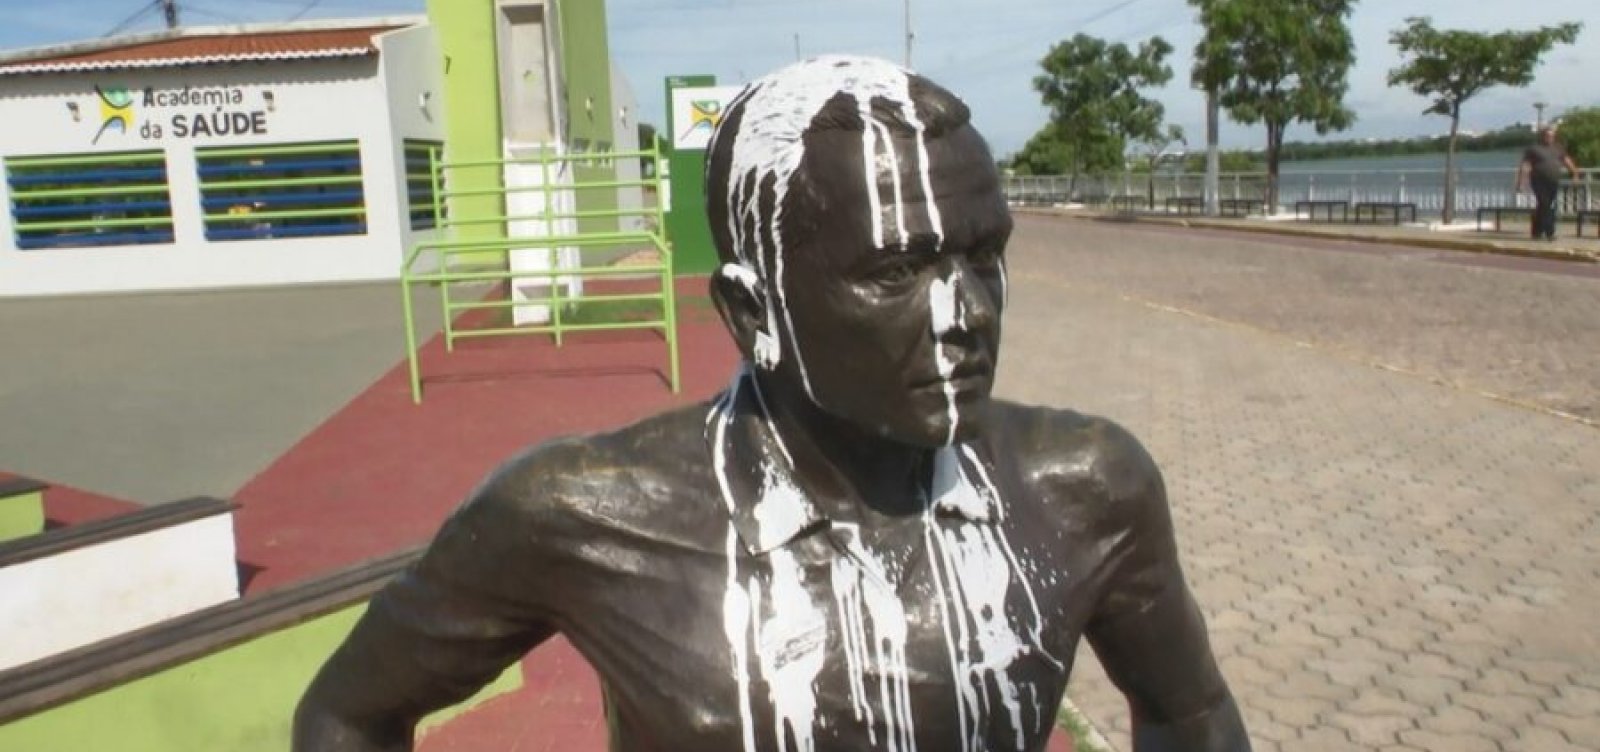 Estátua de Daniel Alves volta a ser vandalizada por moradores em Juazeiro 